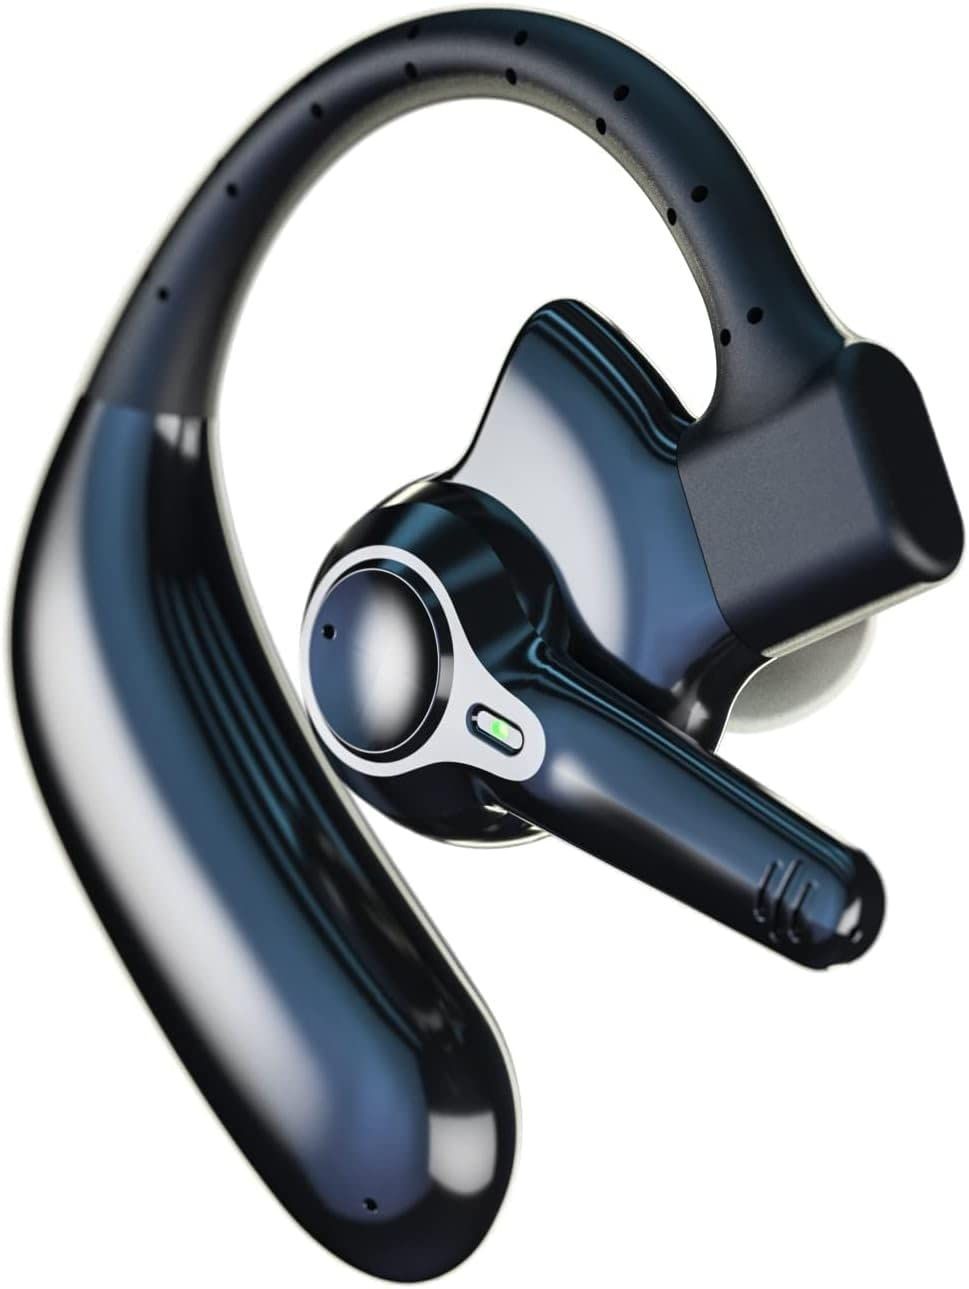 Bluetoothヘッドセット ワイヤレスイヤホン Bluetoothイヤホン ブルートゥースイヤホン ビジネスヘッドセット 耳掛け型 片耳イヤホン 片耳ヘッドセット フィット感抜群